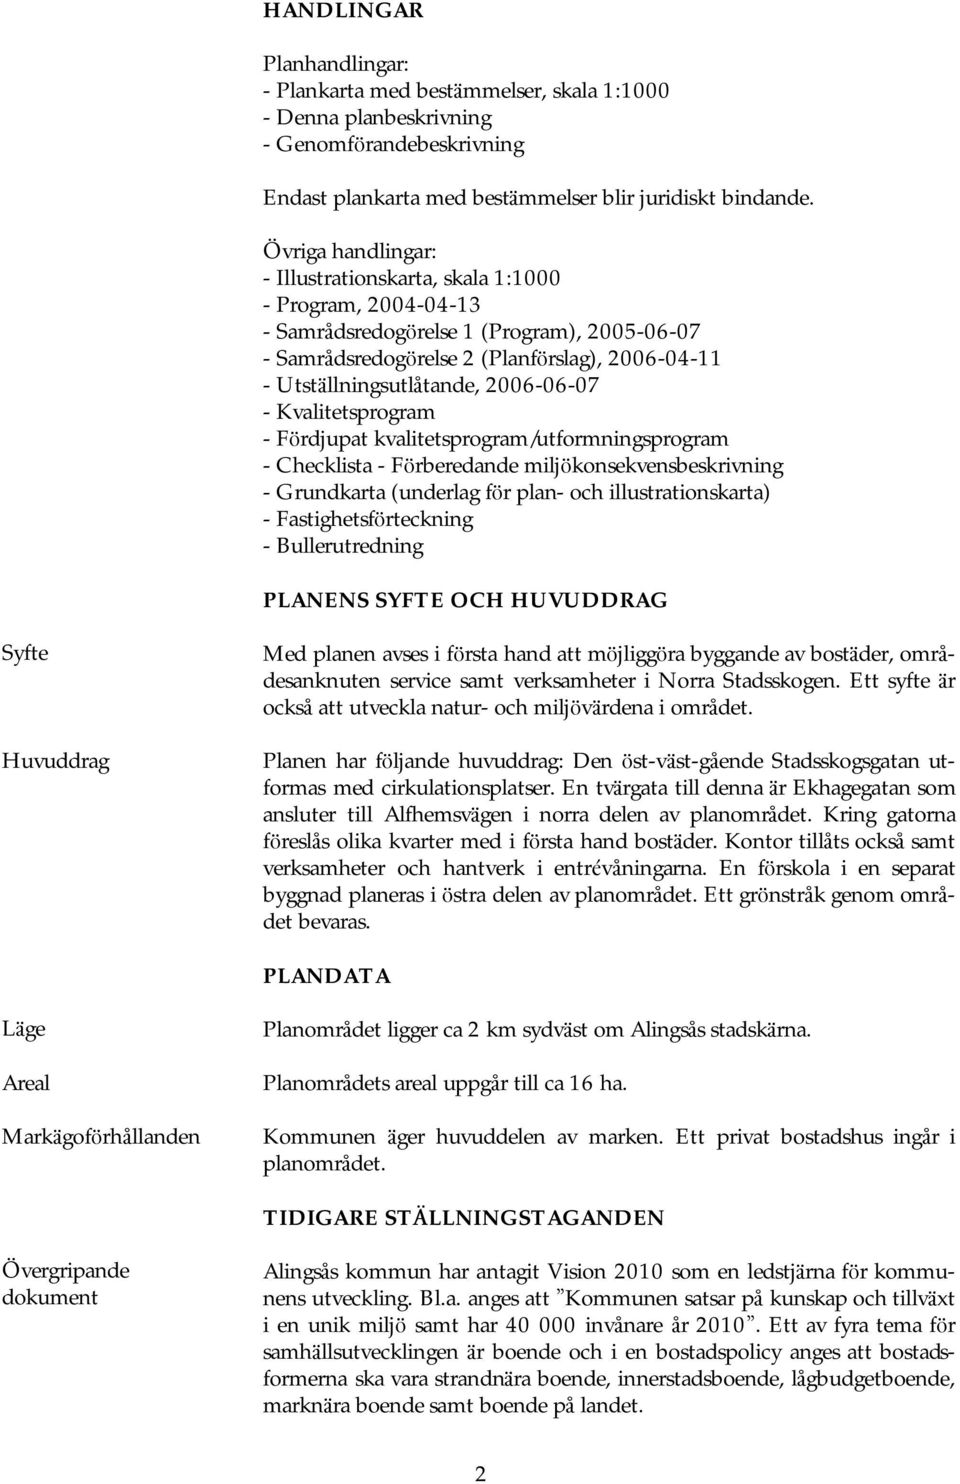 2006-06-07 - Kvalitetsprogram - Fö rdjupat kvalitetsprogram/utformningsprogram - Checklista - Fö rberedande miljö konsekvensbeskrivning - Grundkarta (underlag fö r plan- och illustrationskarta) -